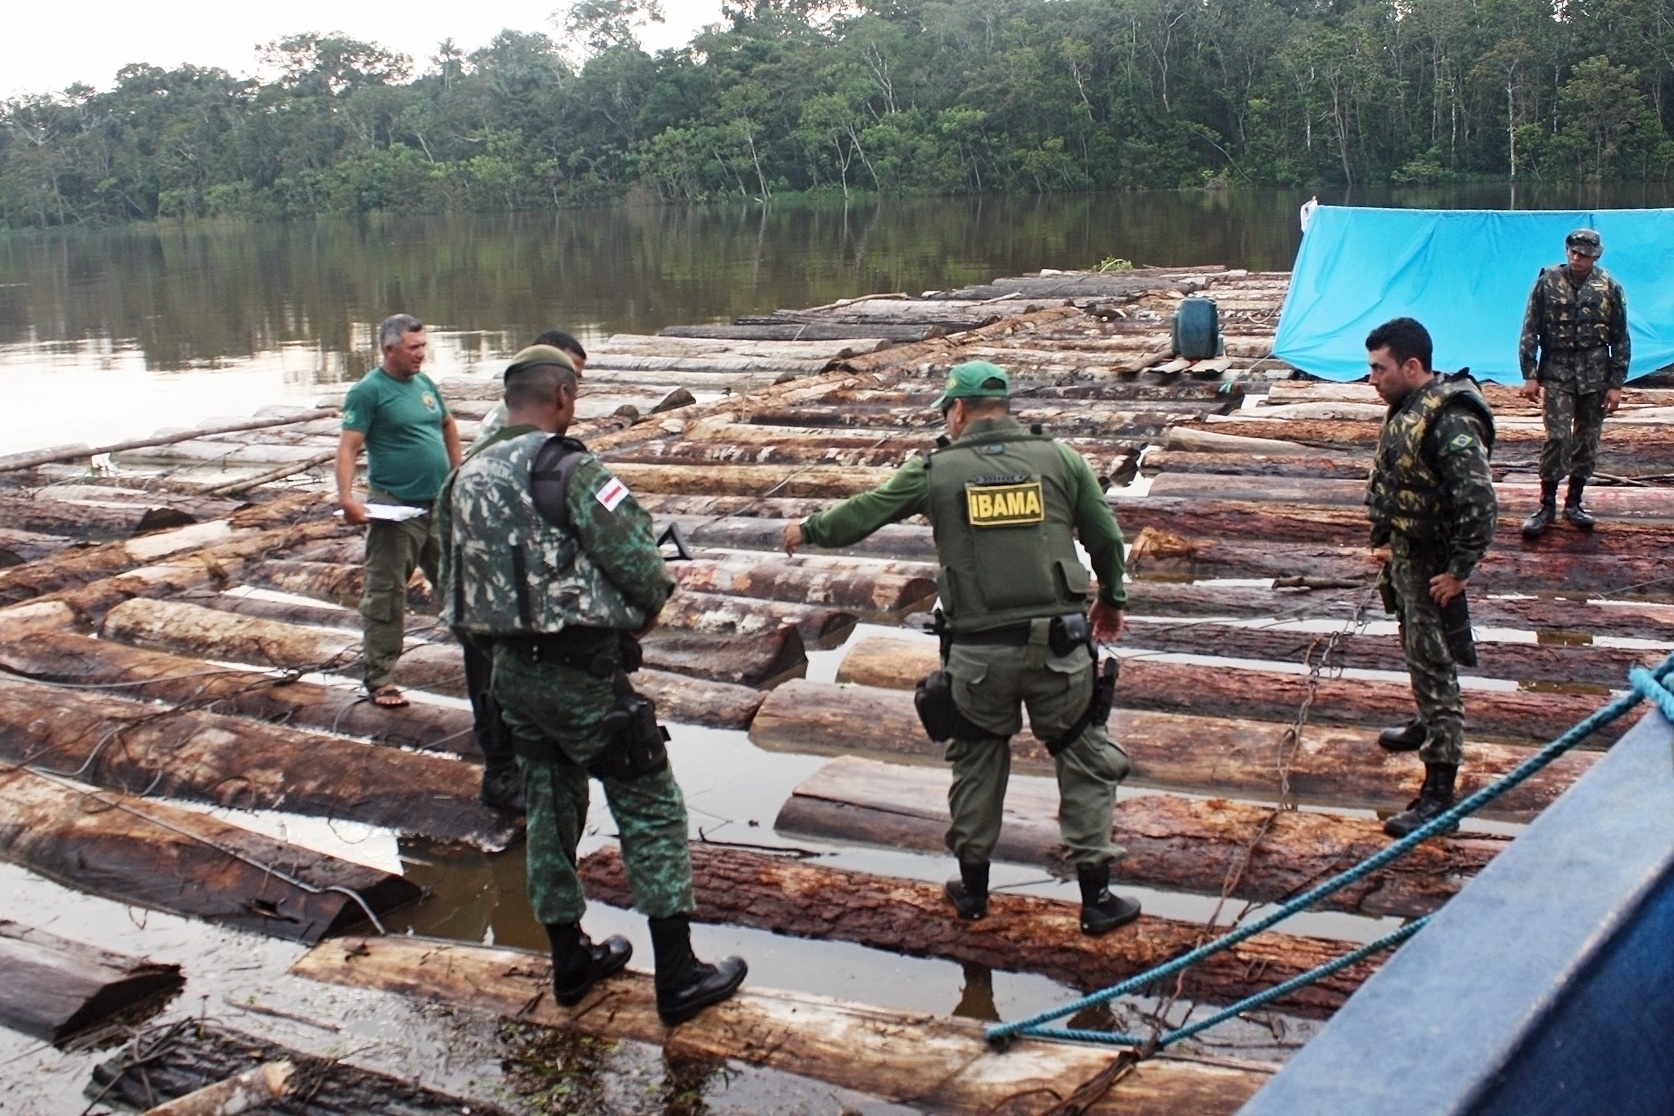 Apreensão de toras na fronteira com o Peru em operação que envolveu Ibama, Exército, Funai, PF e PM do Amazonas